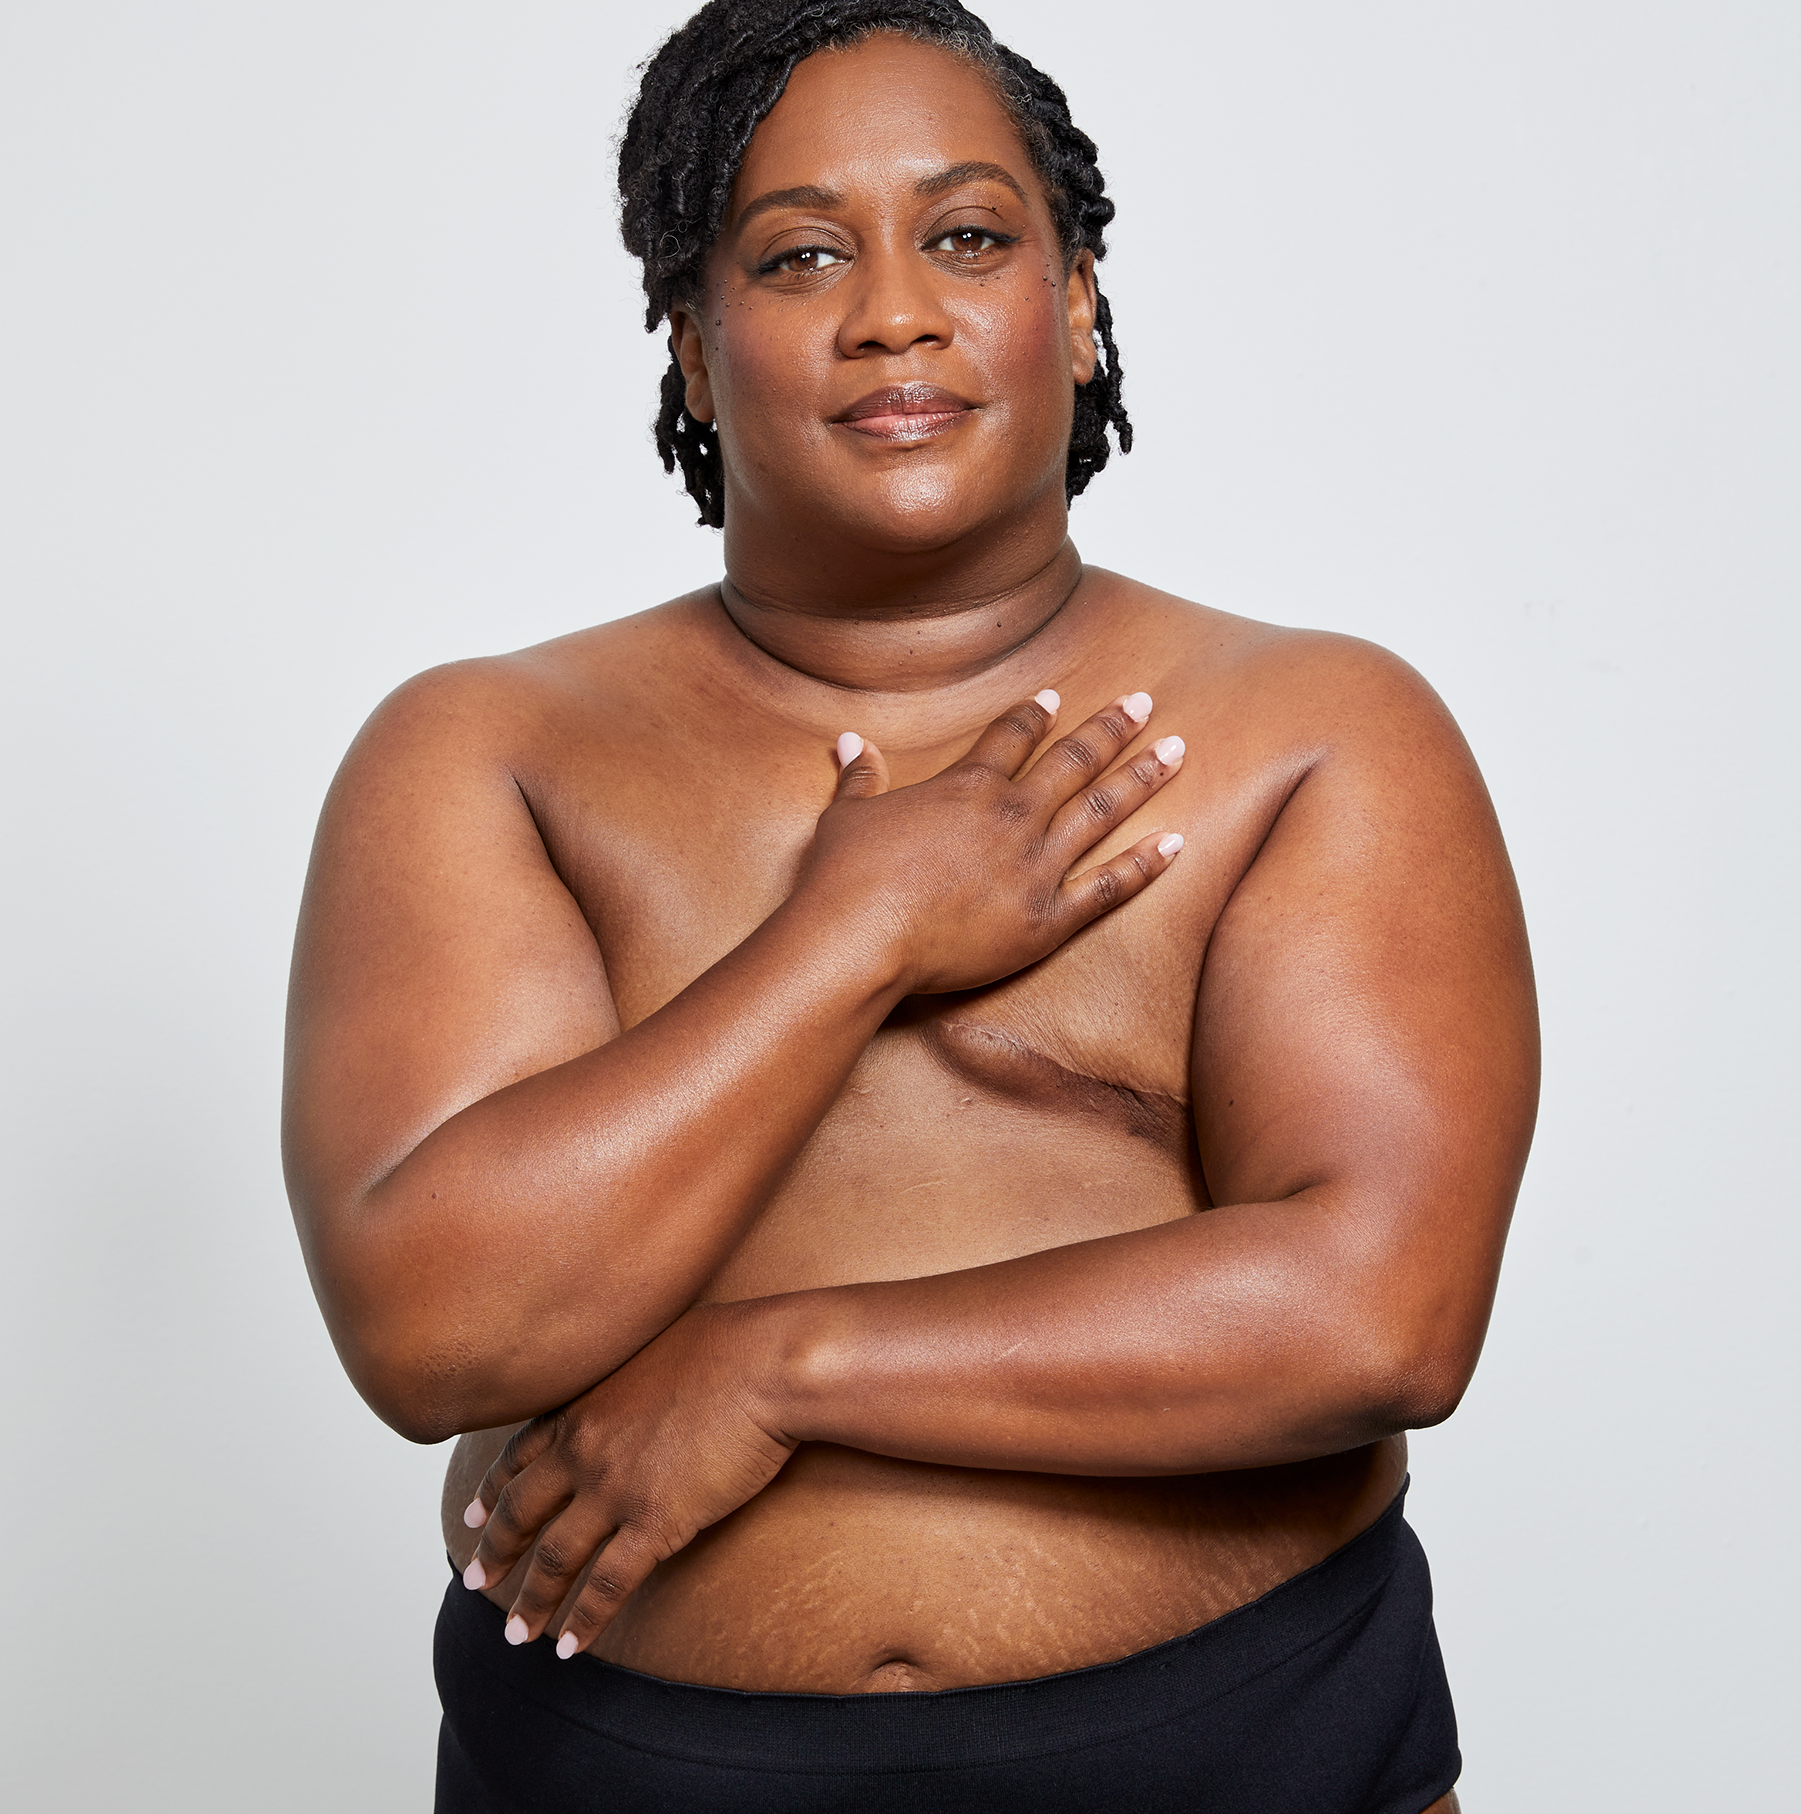 celeste hale recommends fat black lady sex pic